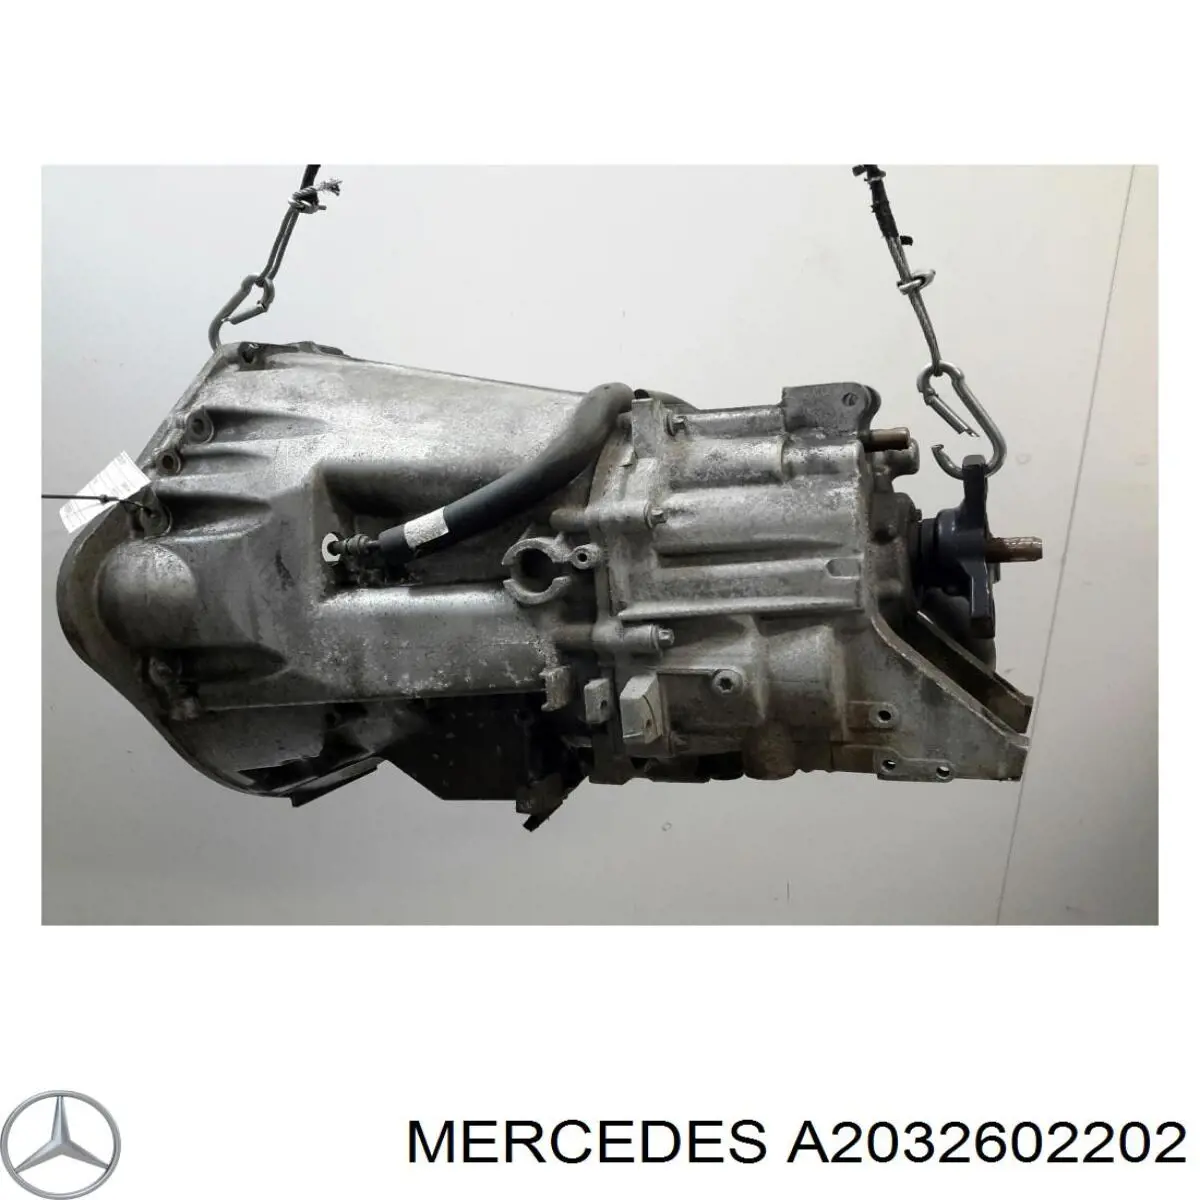 A2032602202 Mercedes caixa de mudança montada (caixa mecânica de velocidades)